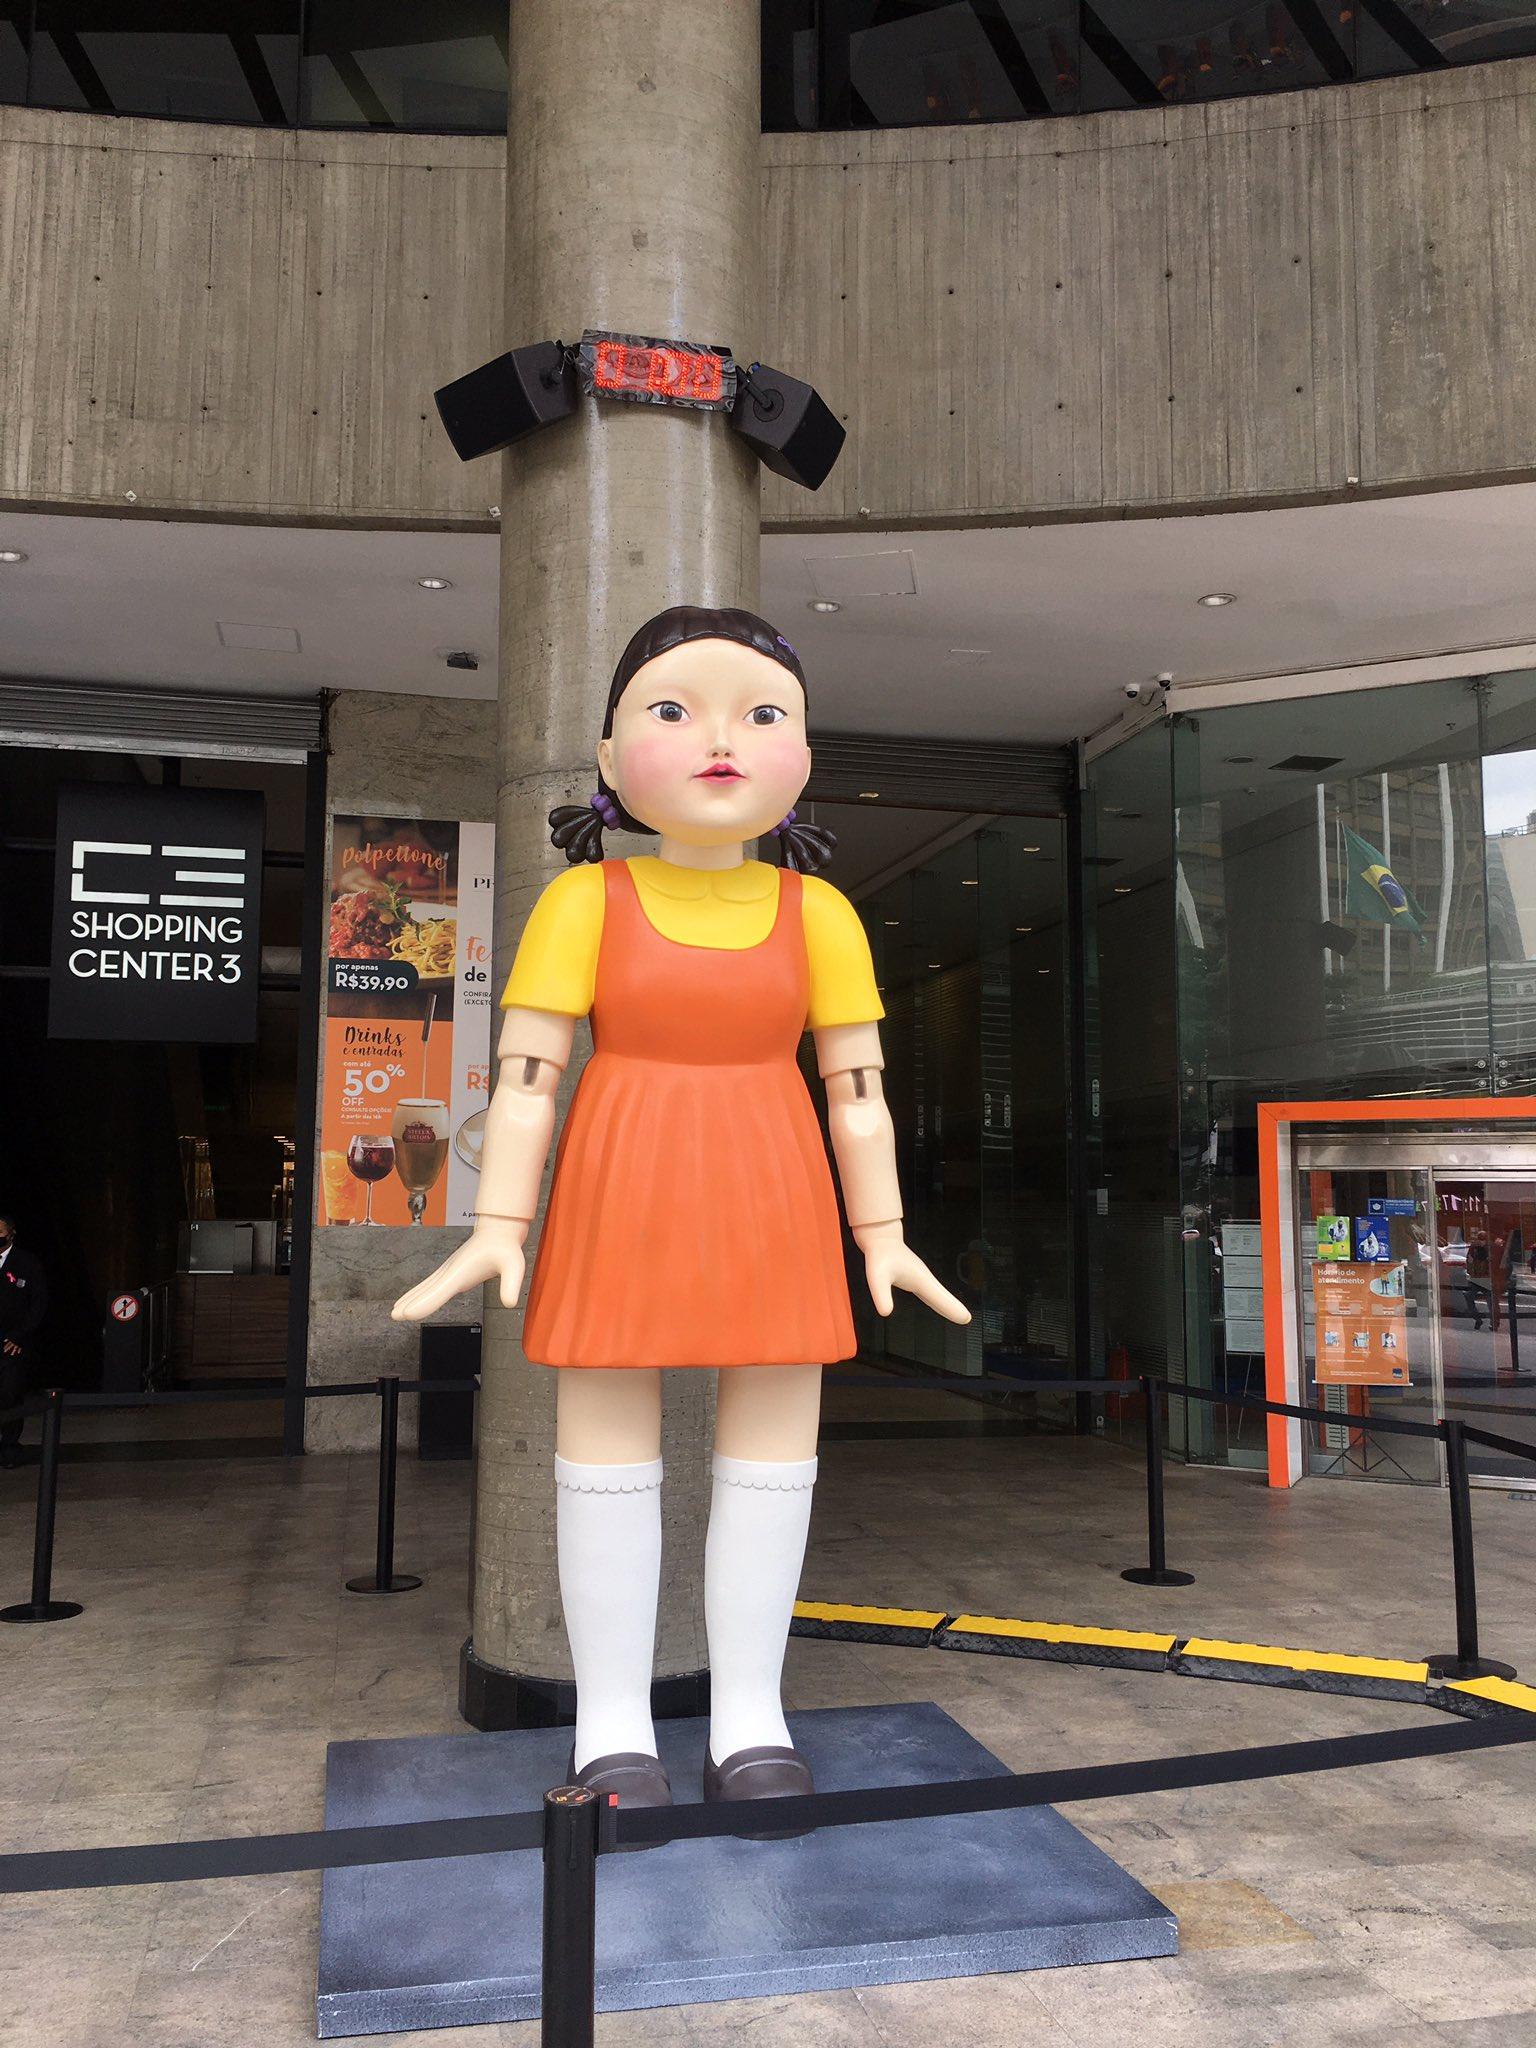 Shopping instala boneca assassina de Round 6 para vigiar pedestres